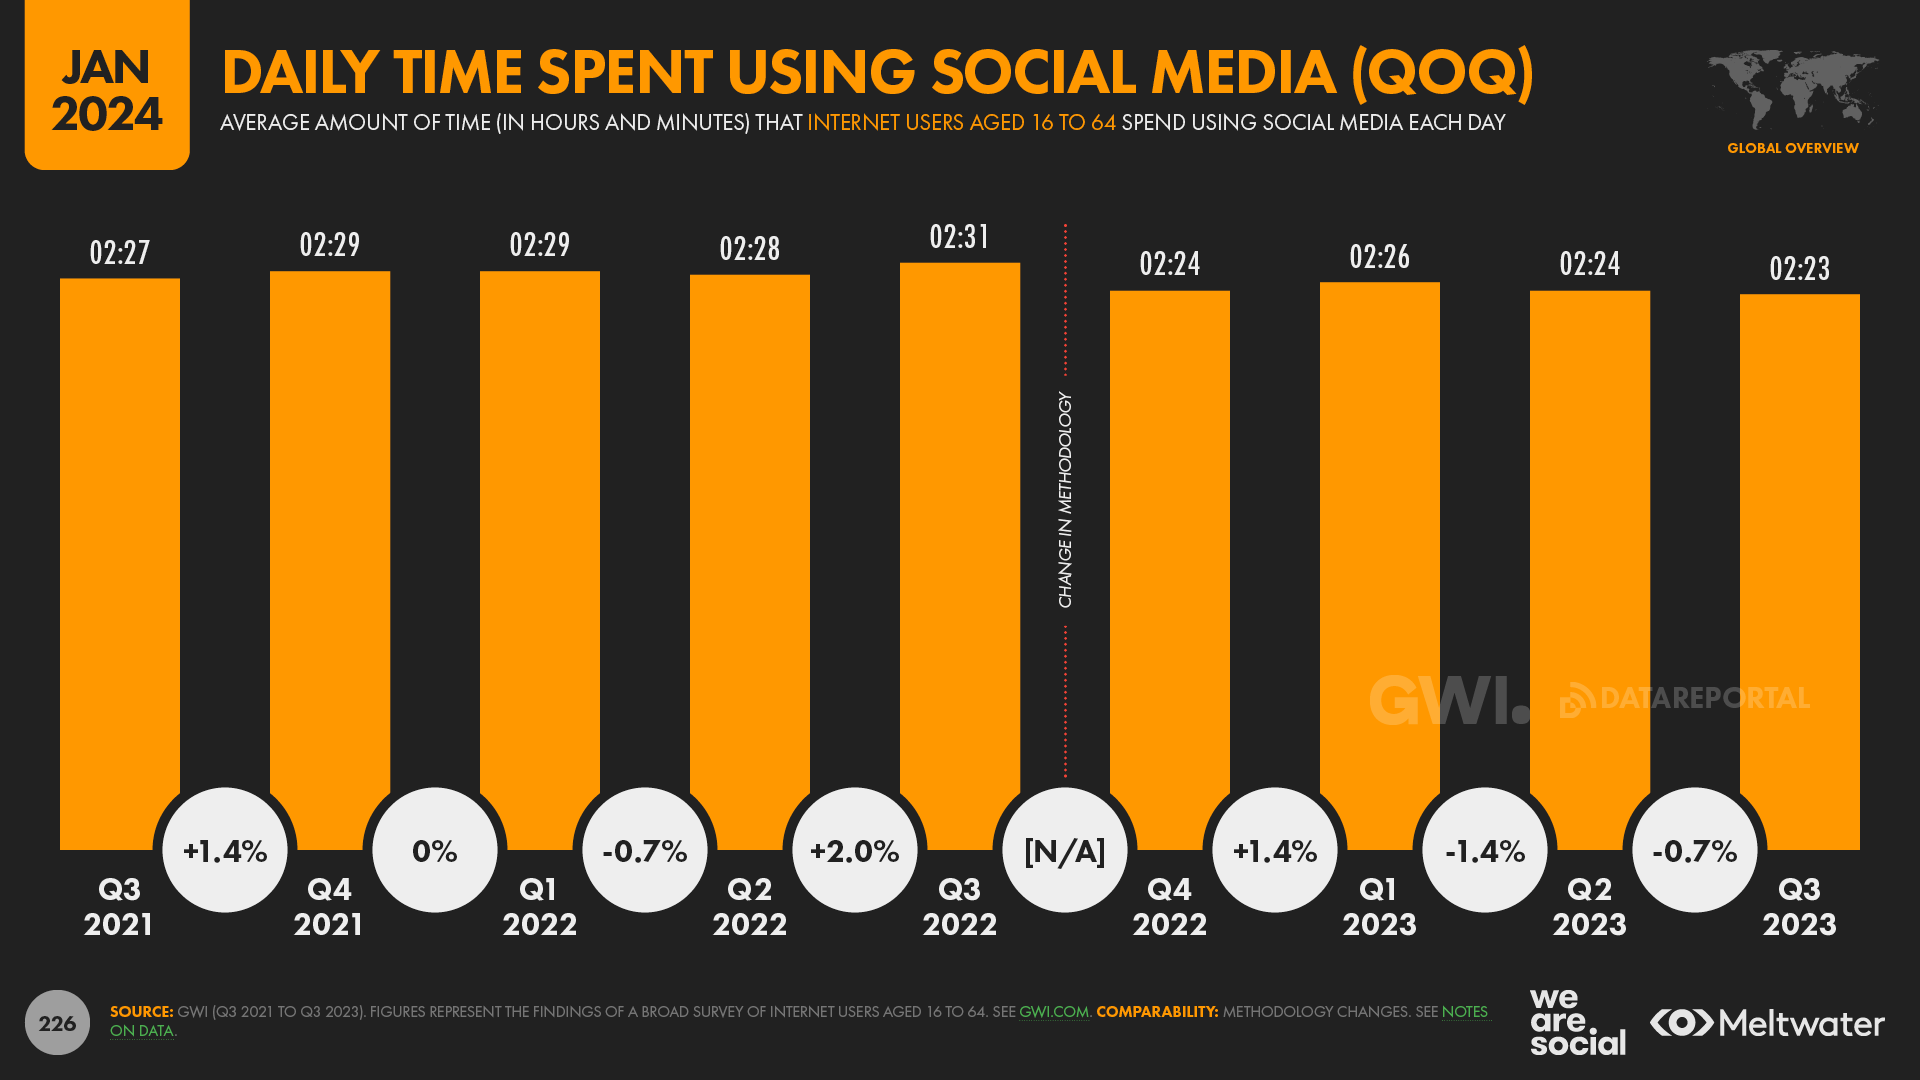 Nghiên cứu từ GWI tiết lộ rằng người dùng mạng xã hội "điển hình" hiện dành 2 giờ 23 phút mỗi ngày để sử dụng các nền tảng xã hội.